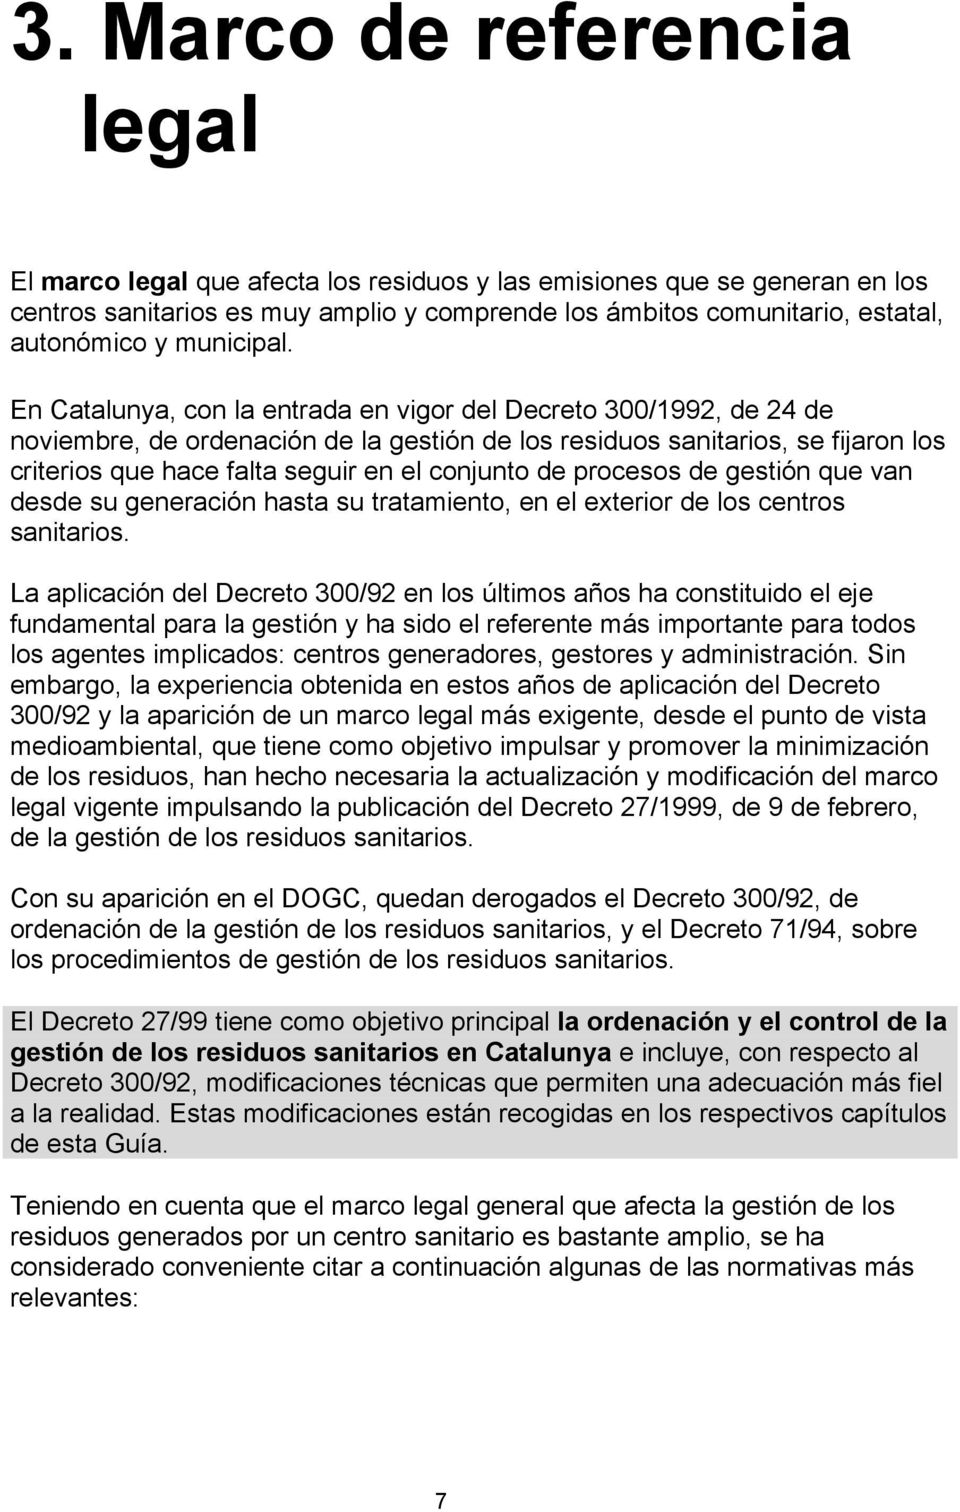 En Catalunya, con la entrada en vigor del Decreto 300/1992, de 24 de noviembre, de ordenación de la gestión de los residuos sanitarios, se fijaron los criterios que hace falta seguir en el conjunto